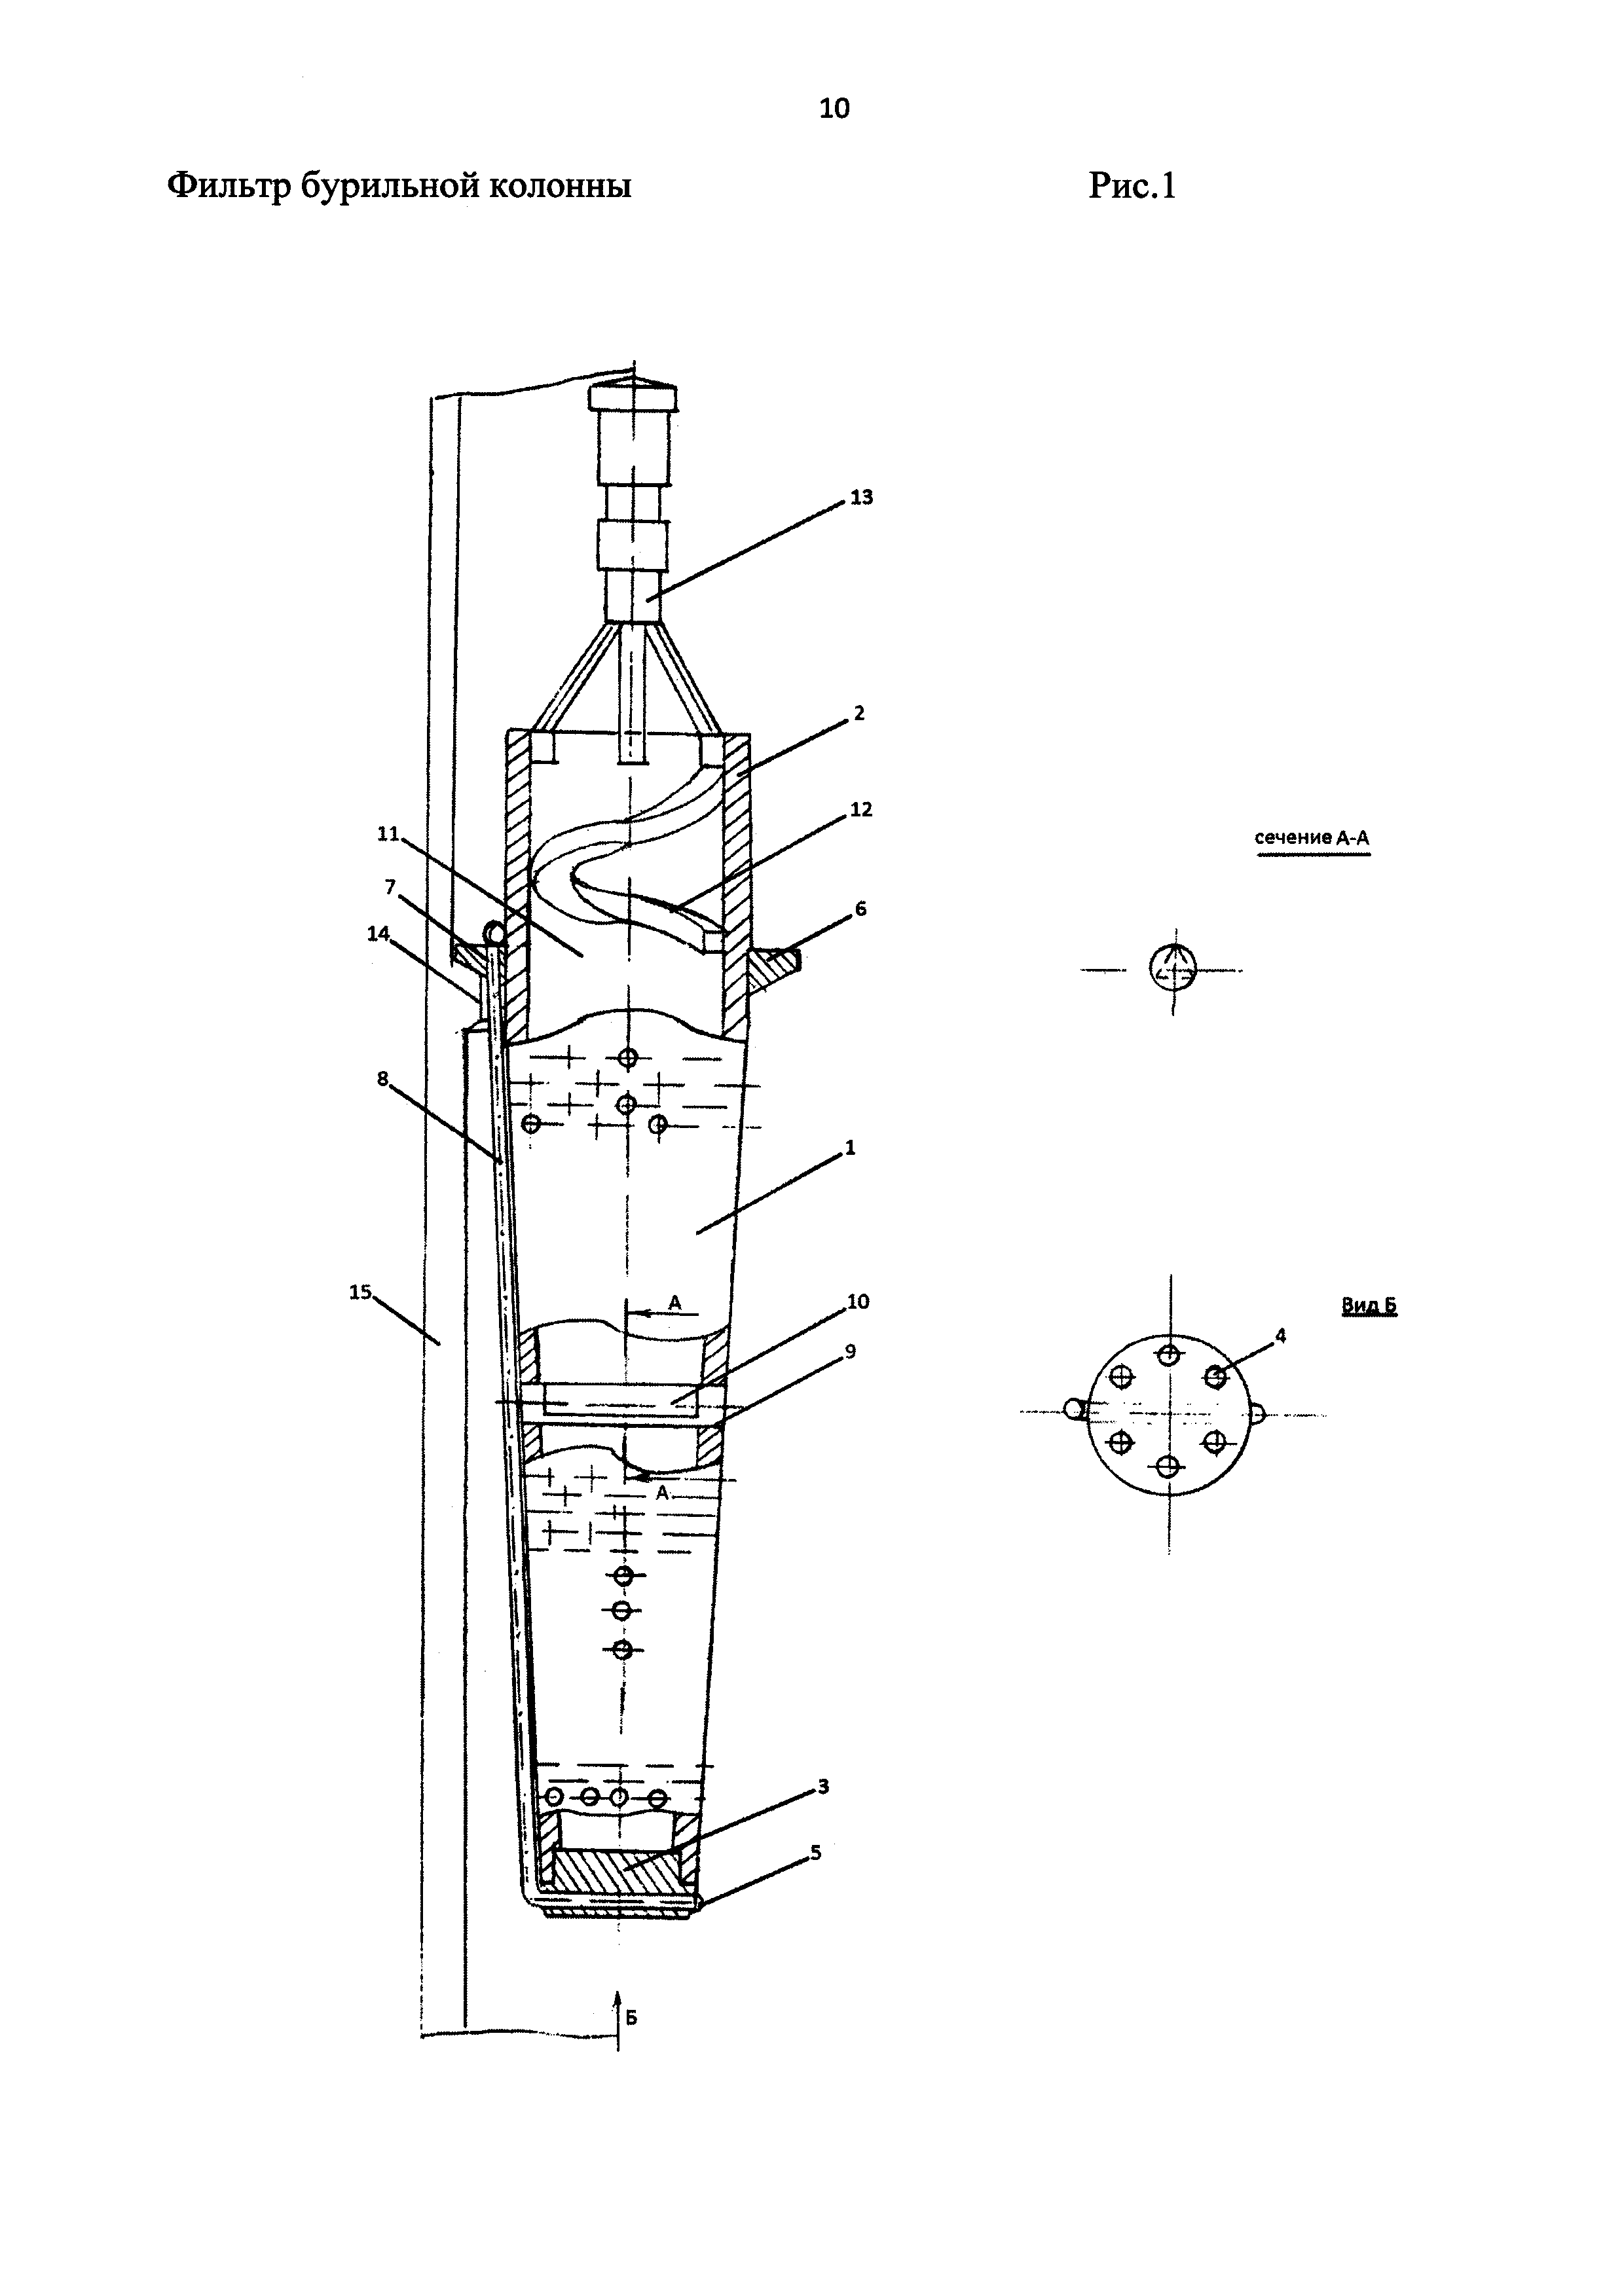 Фильтр бурильной колонны